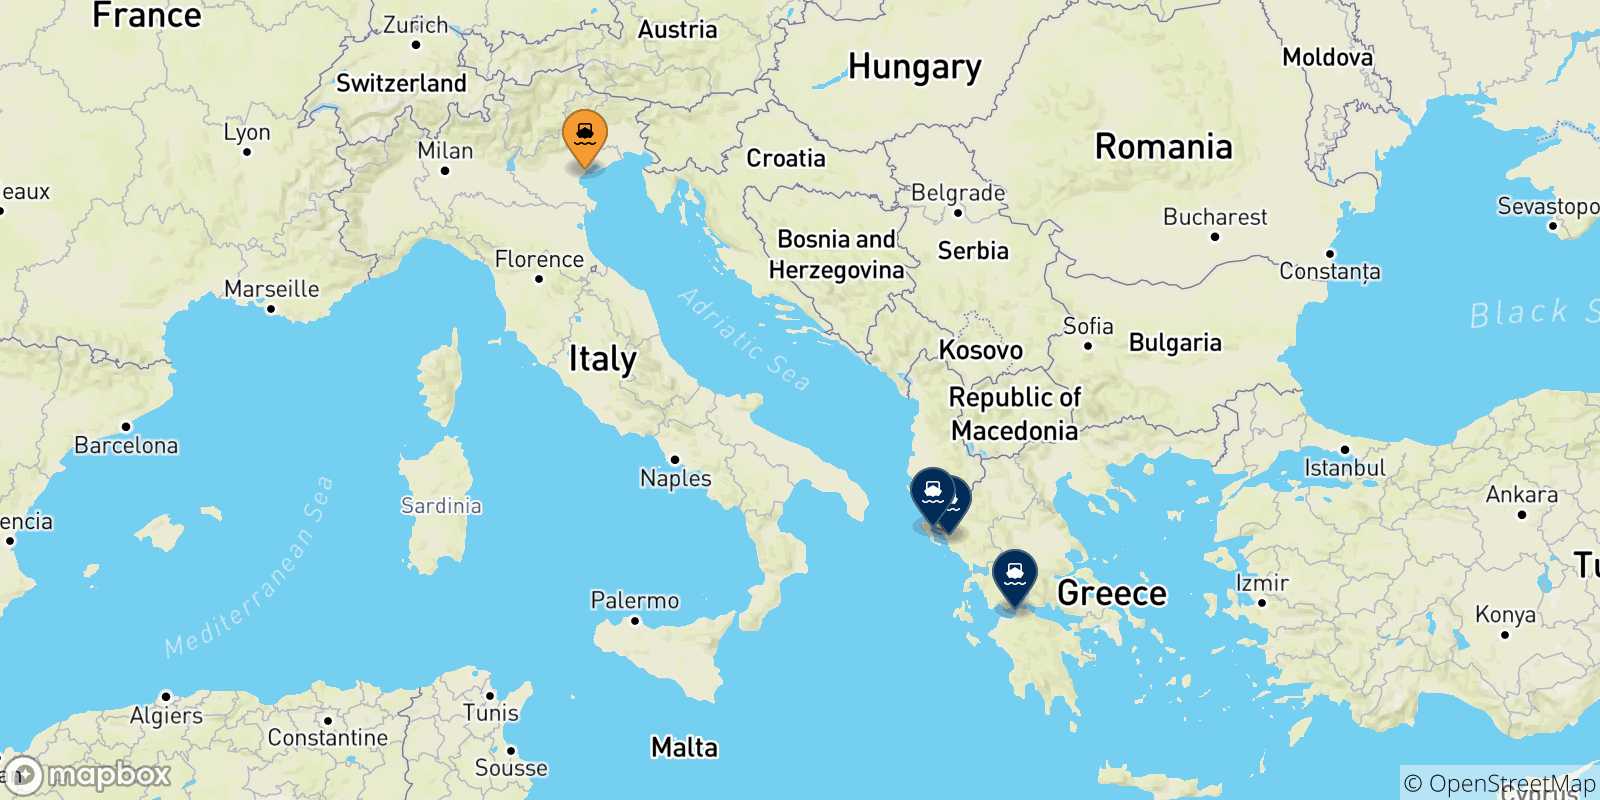 Mappa delle possibili rotte tra Venezia e la Grecia